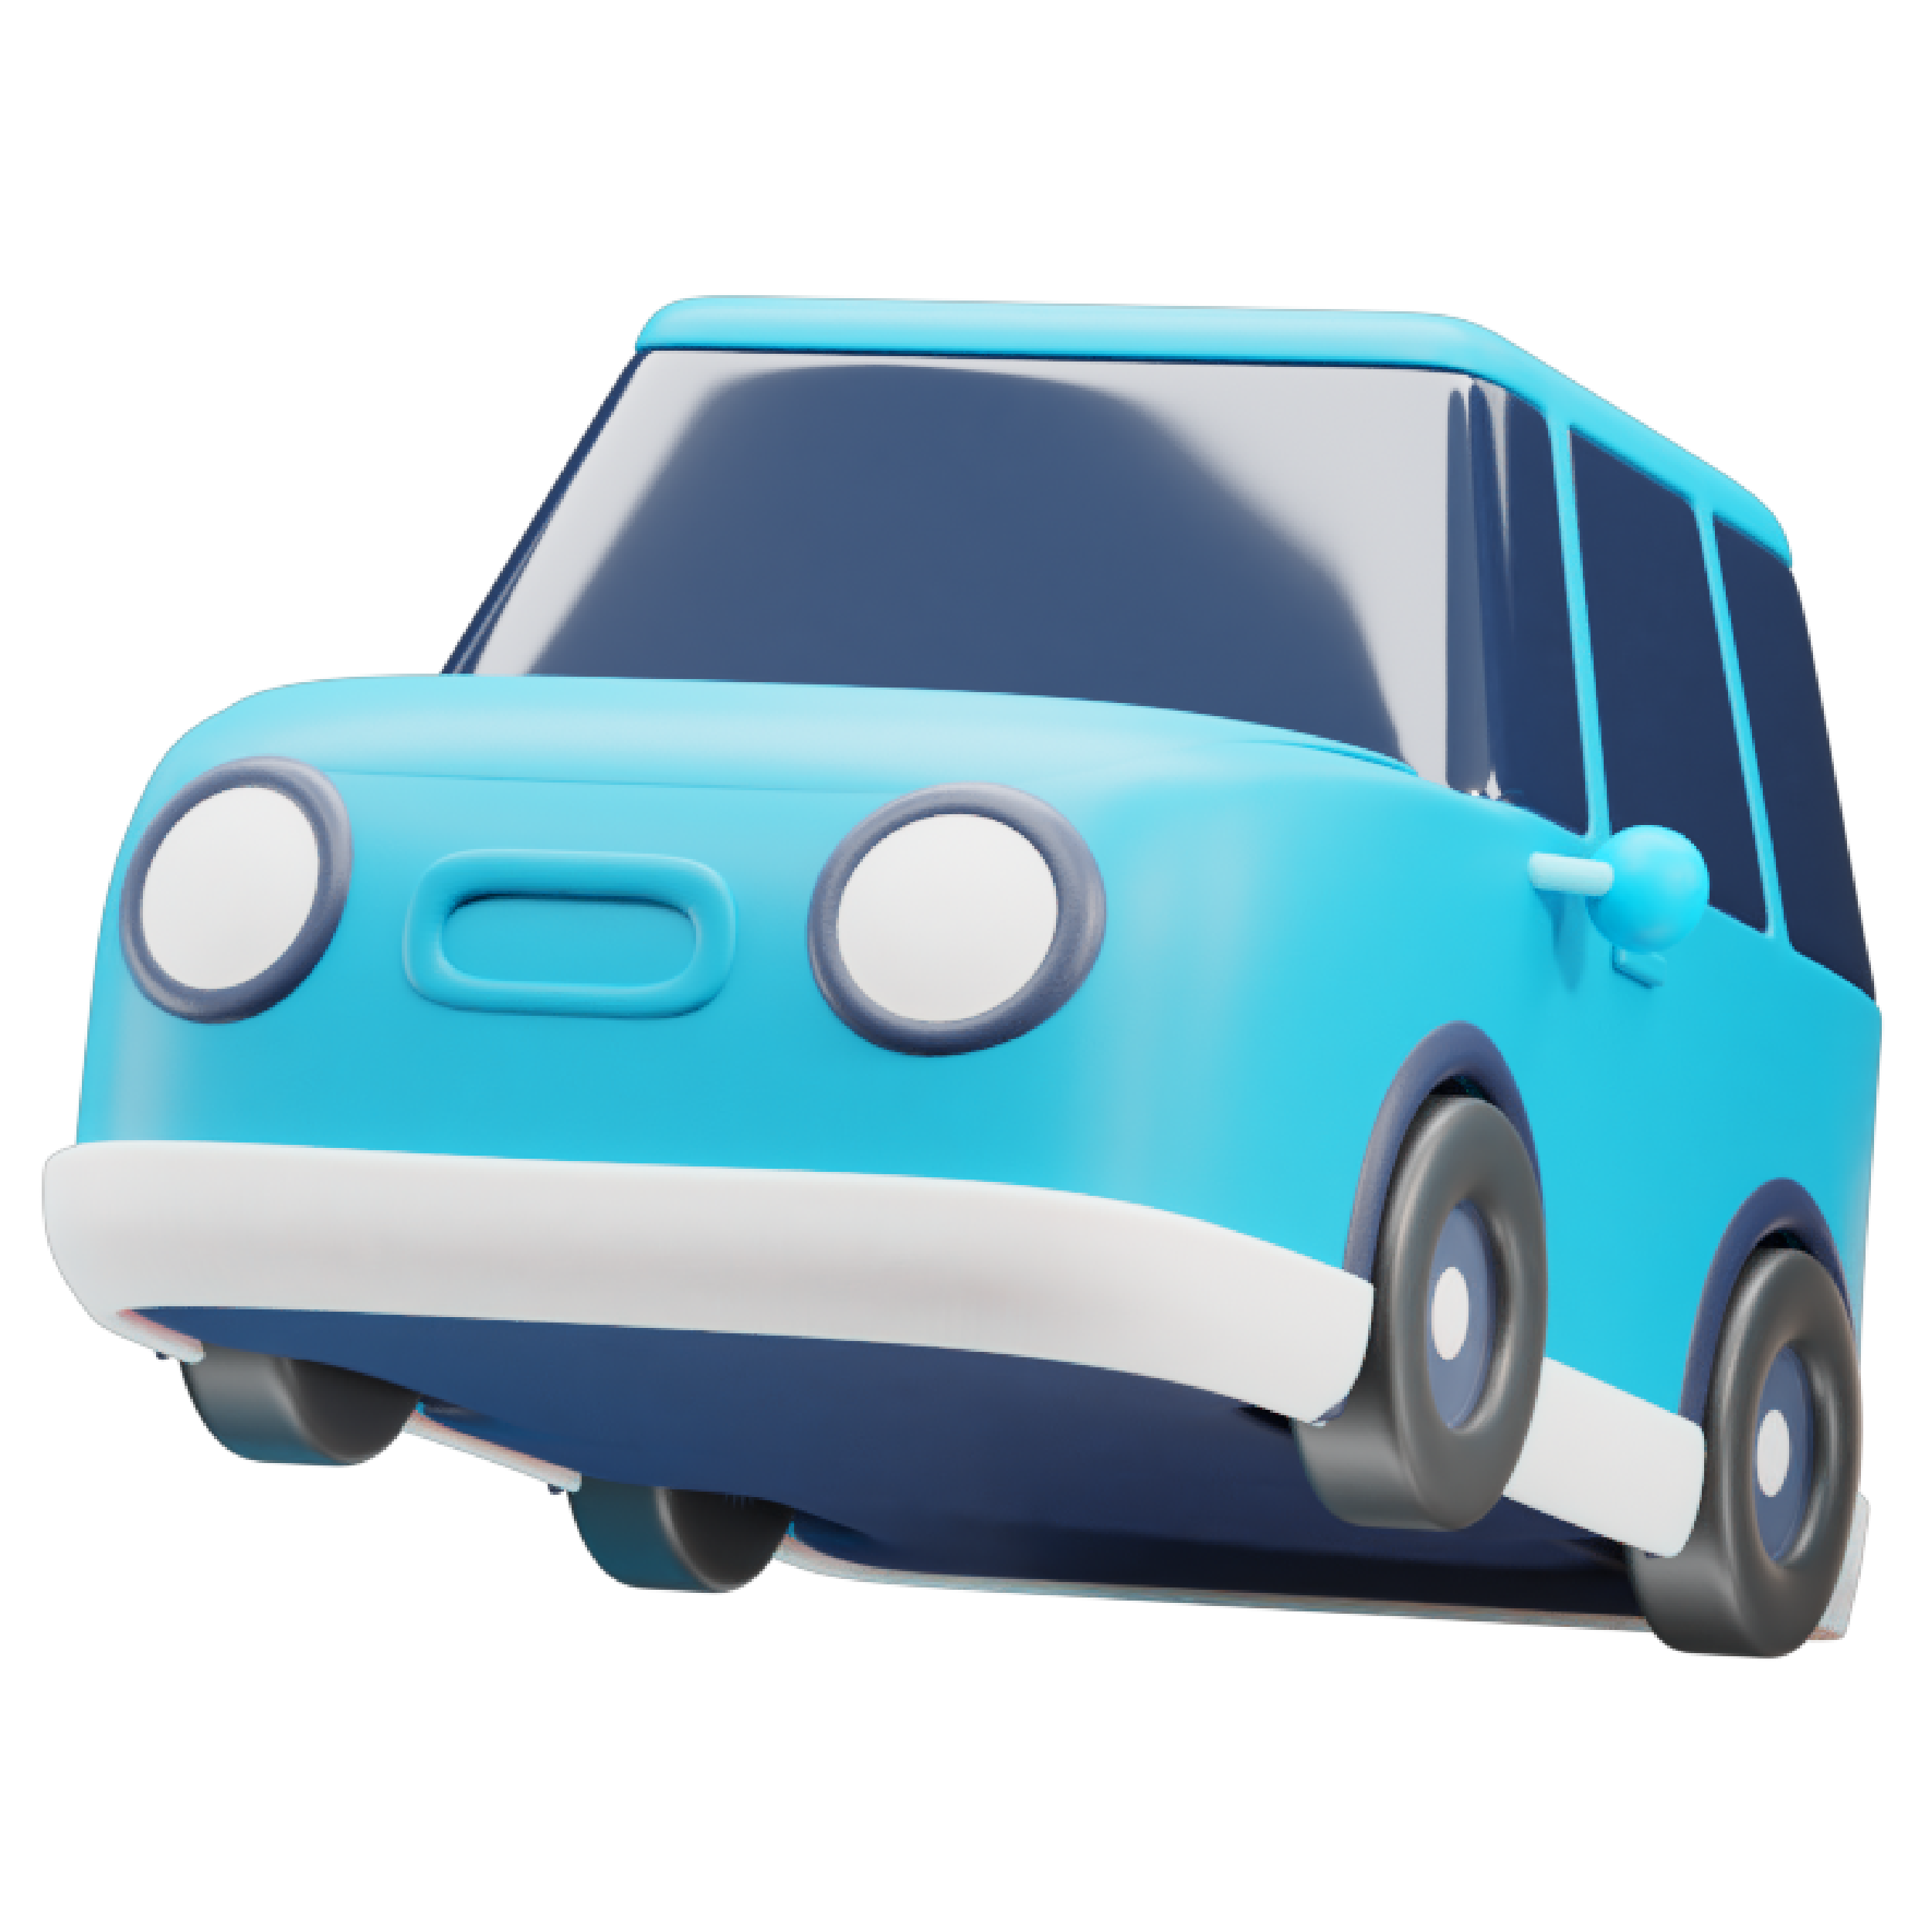 Darstellung eines blauen Autos